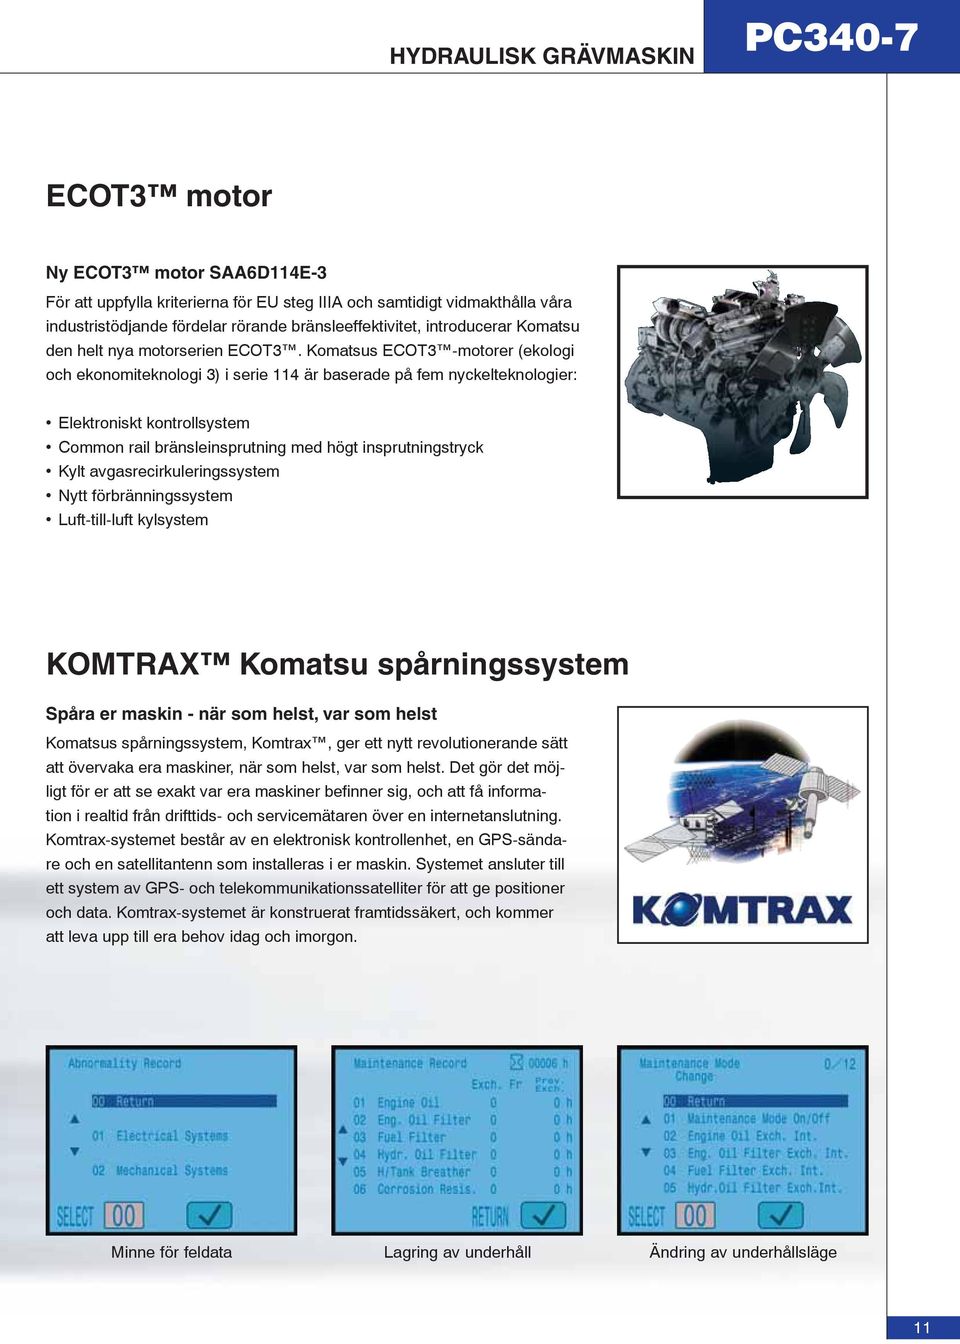 Komatsus ECOT3 -motorer (ekologi och ekonomiteknologi 3) i serie 114 är baserade på fem nyckelteknologier: Elektroniskt kontrollsystem Common rail bränsleinsprutning med högt insprutningstryck Kylt